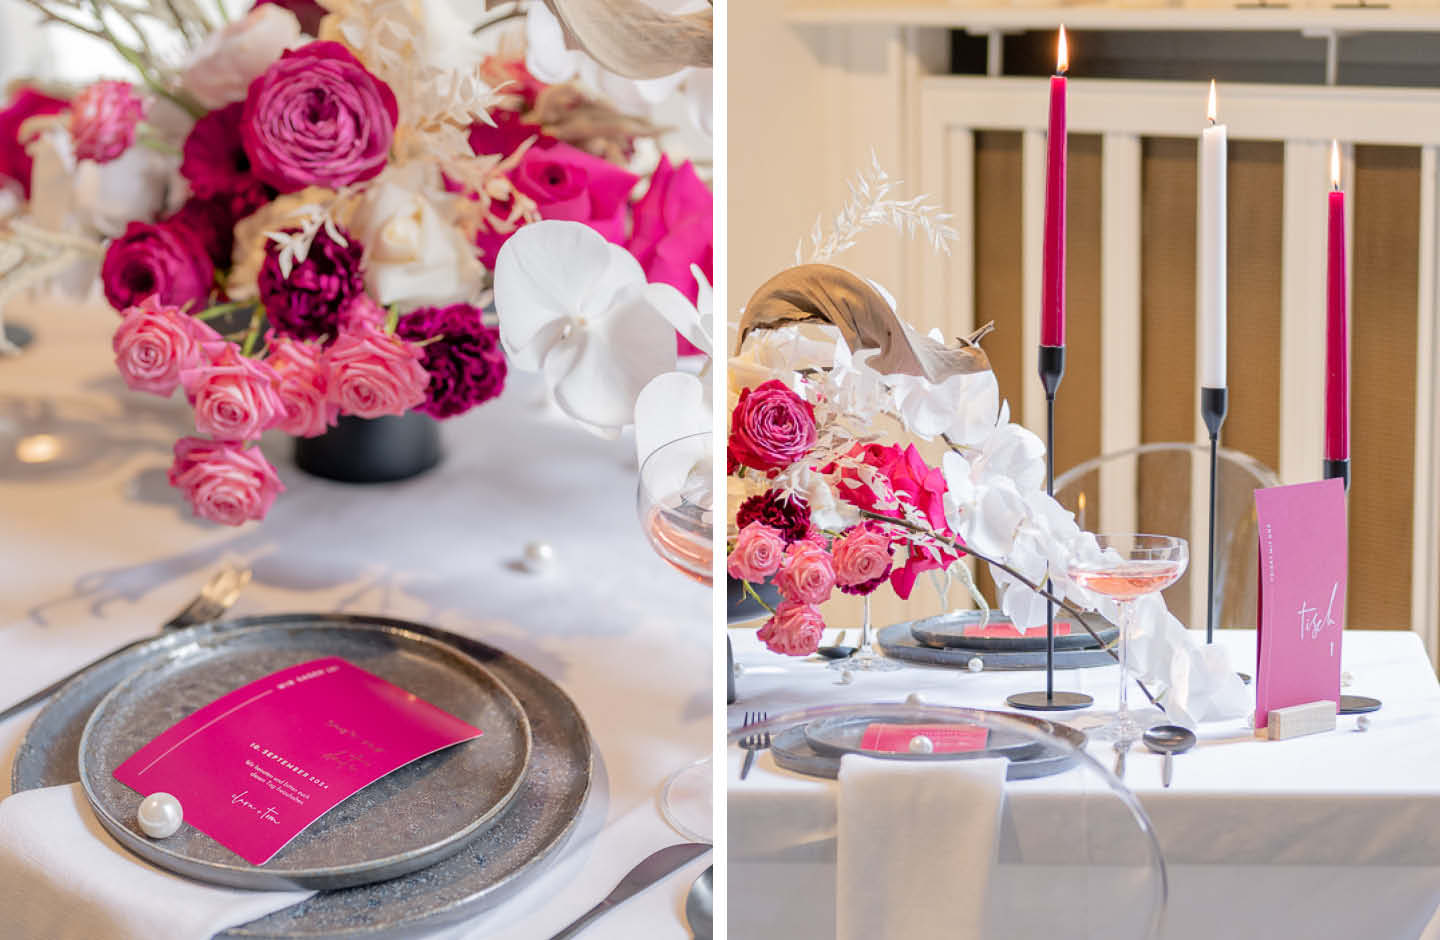 Papeterie in kräftigem Pink liegt auf dem Hochzeitstisch.